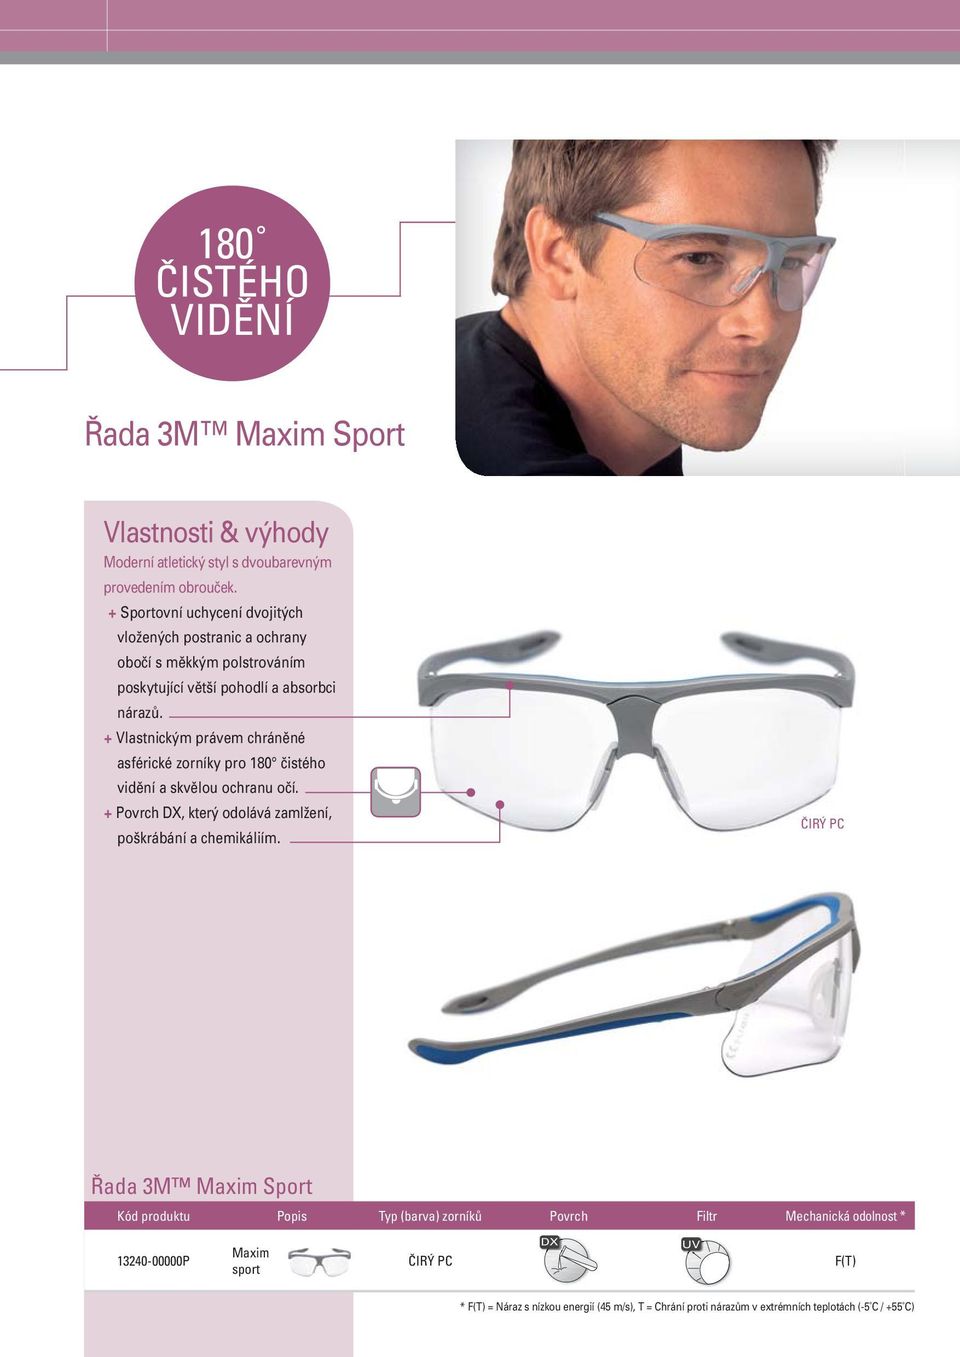 + Vlastnickým právem chráněné asférické zorníky pro 180 čistého vidění a skvělou ochranu očí.